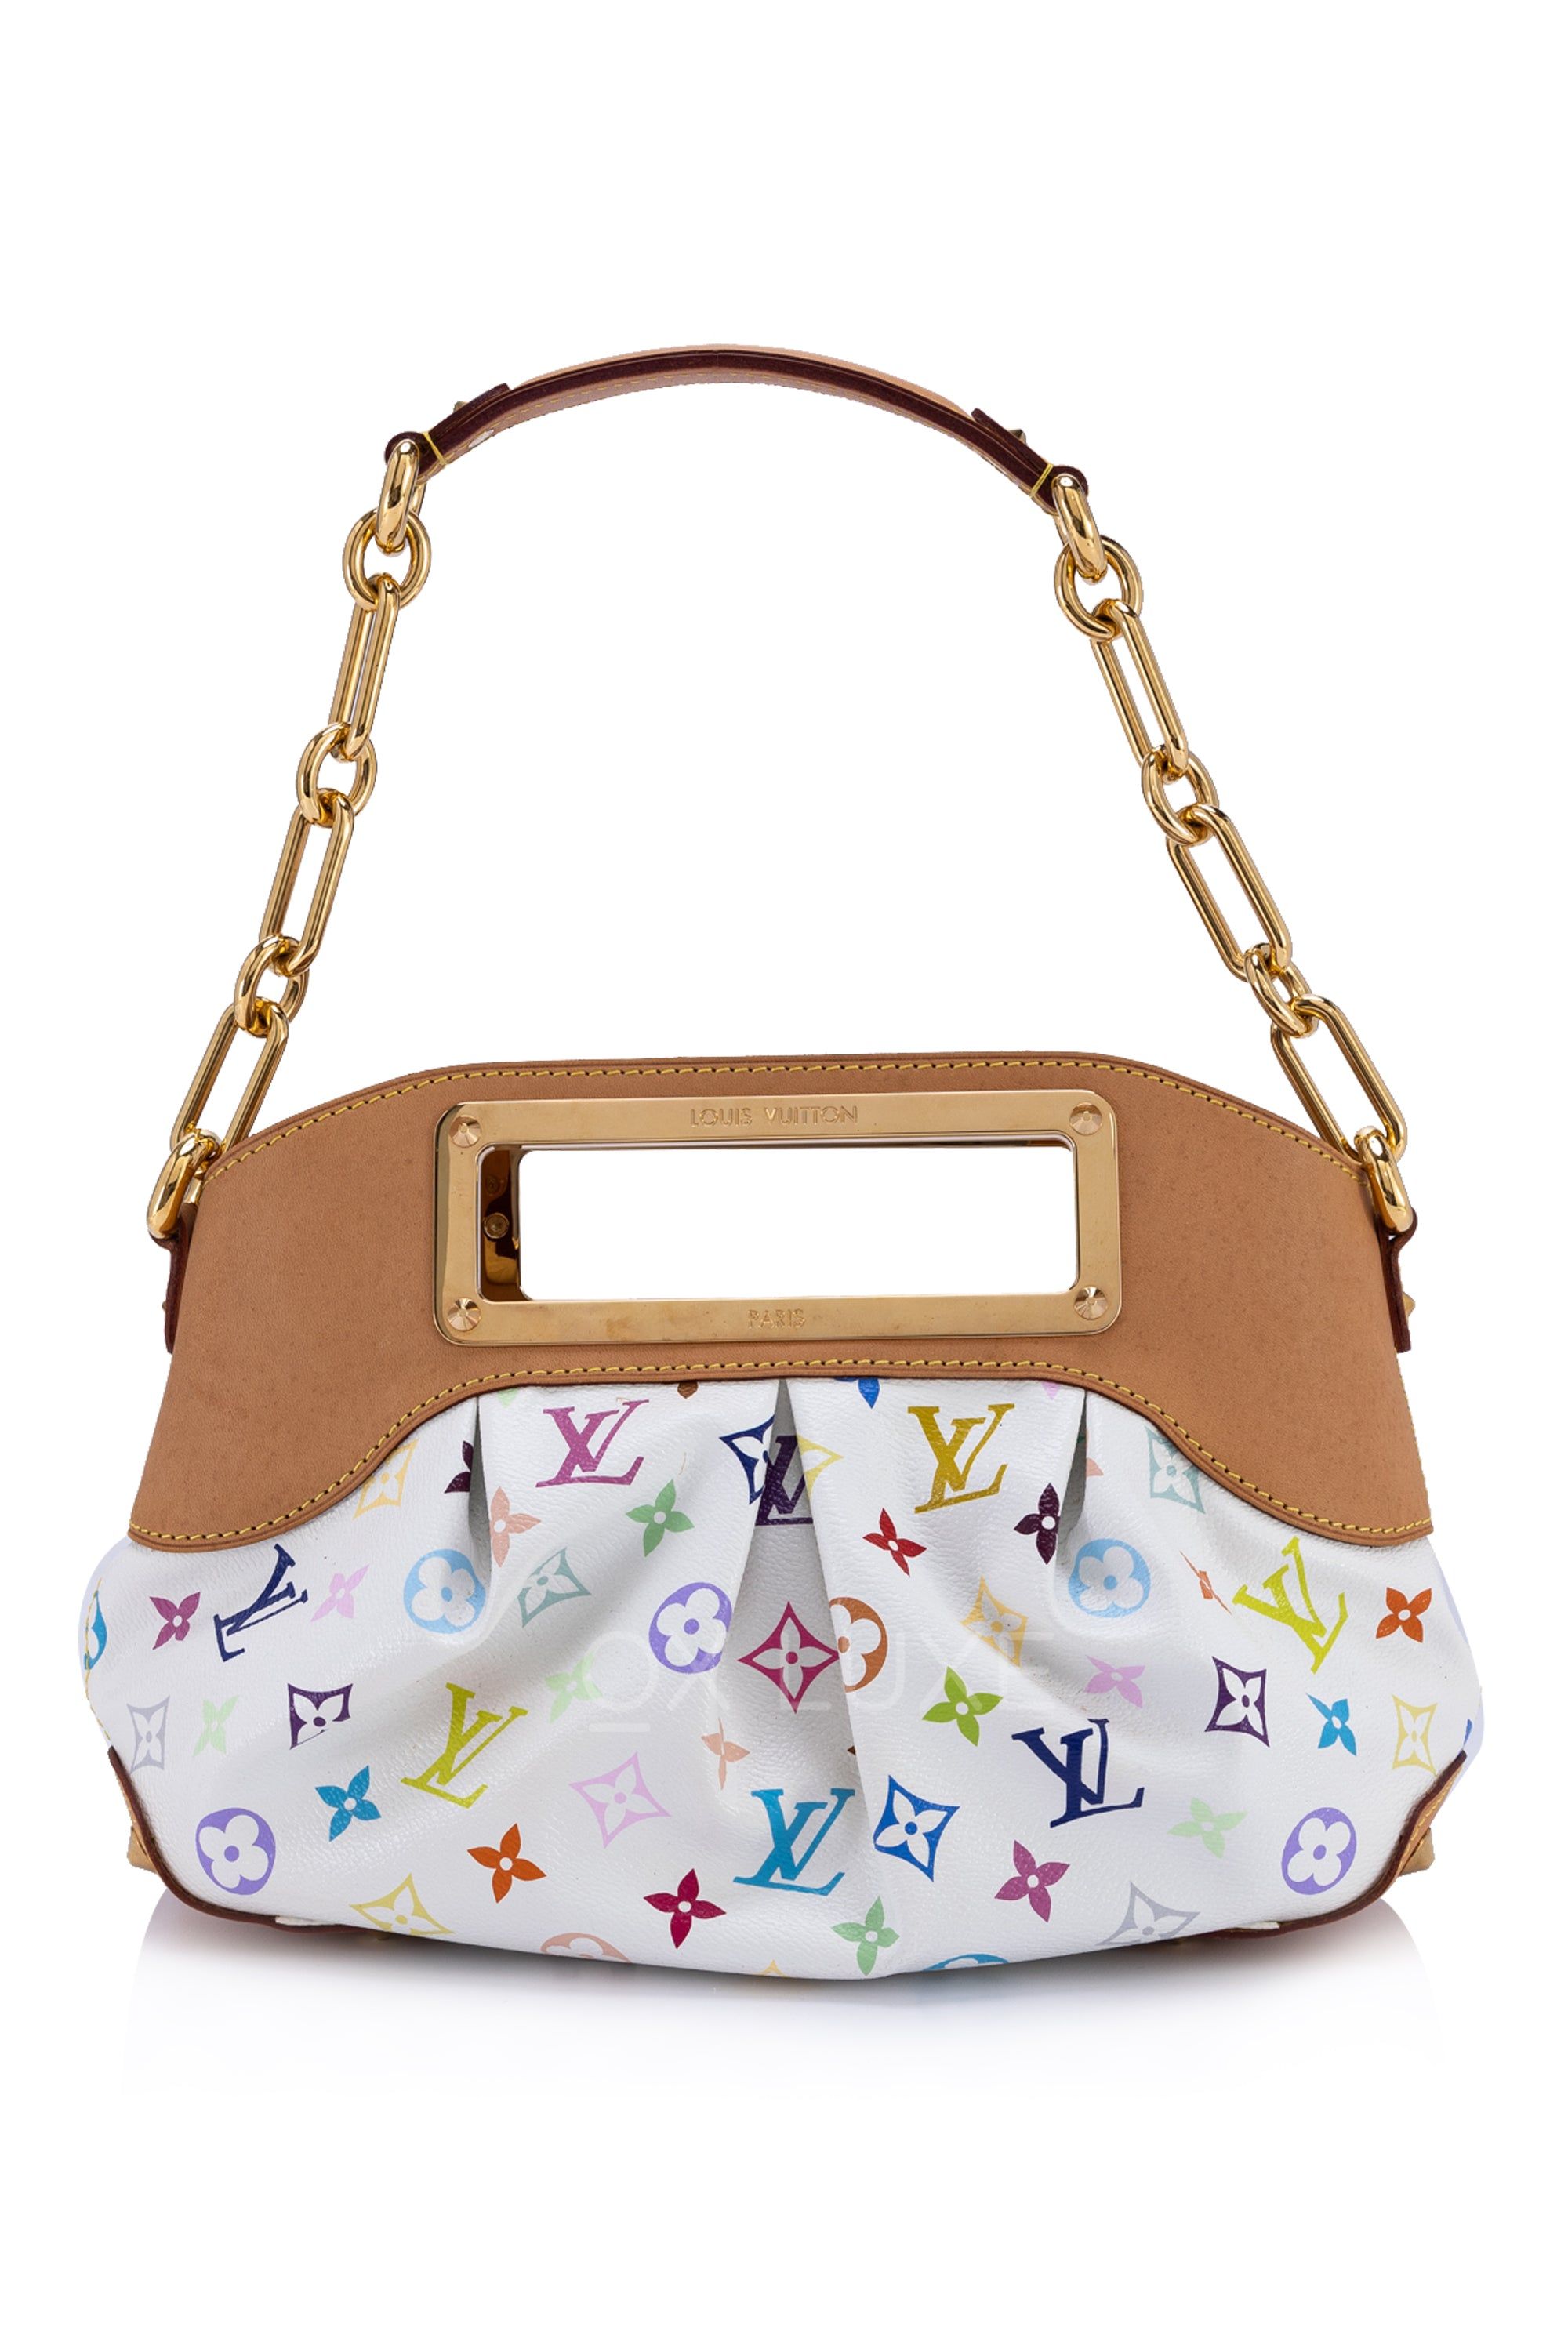 LOUIS VUITTON Multicolor Chain Judy PM Shoulder Bag White M40257